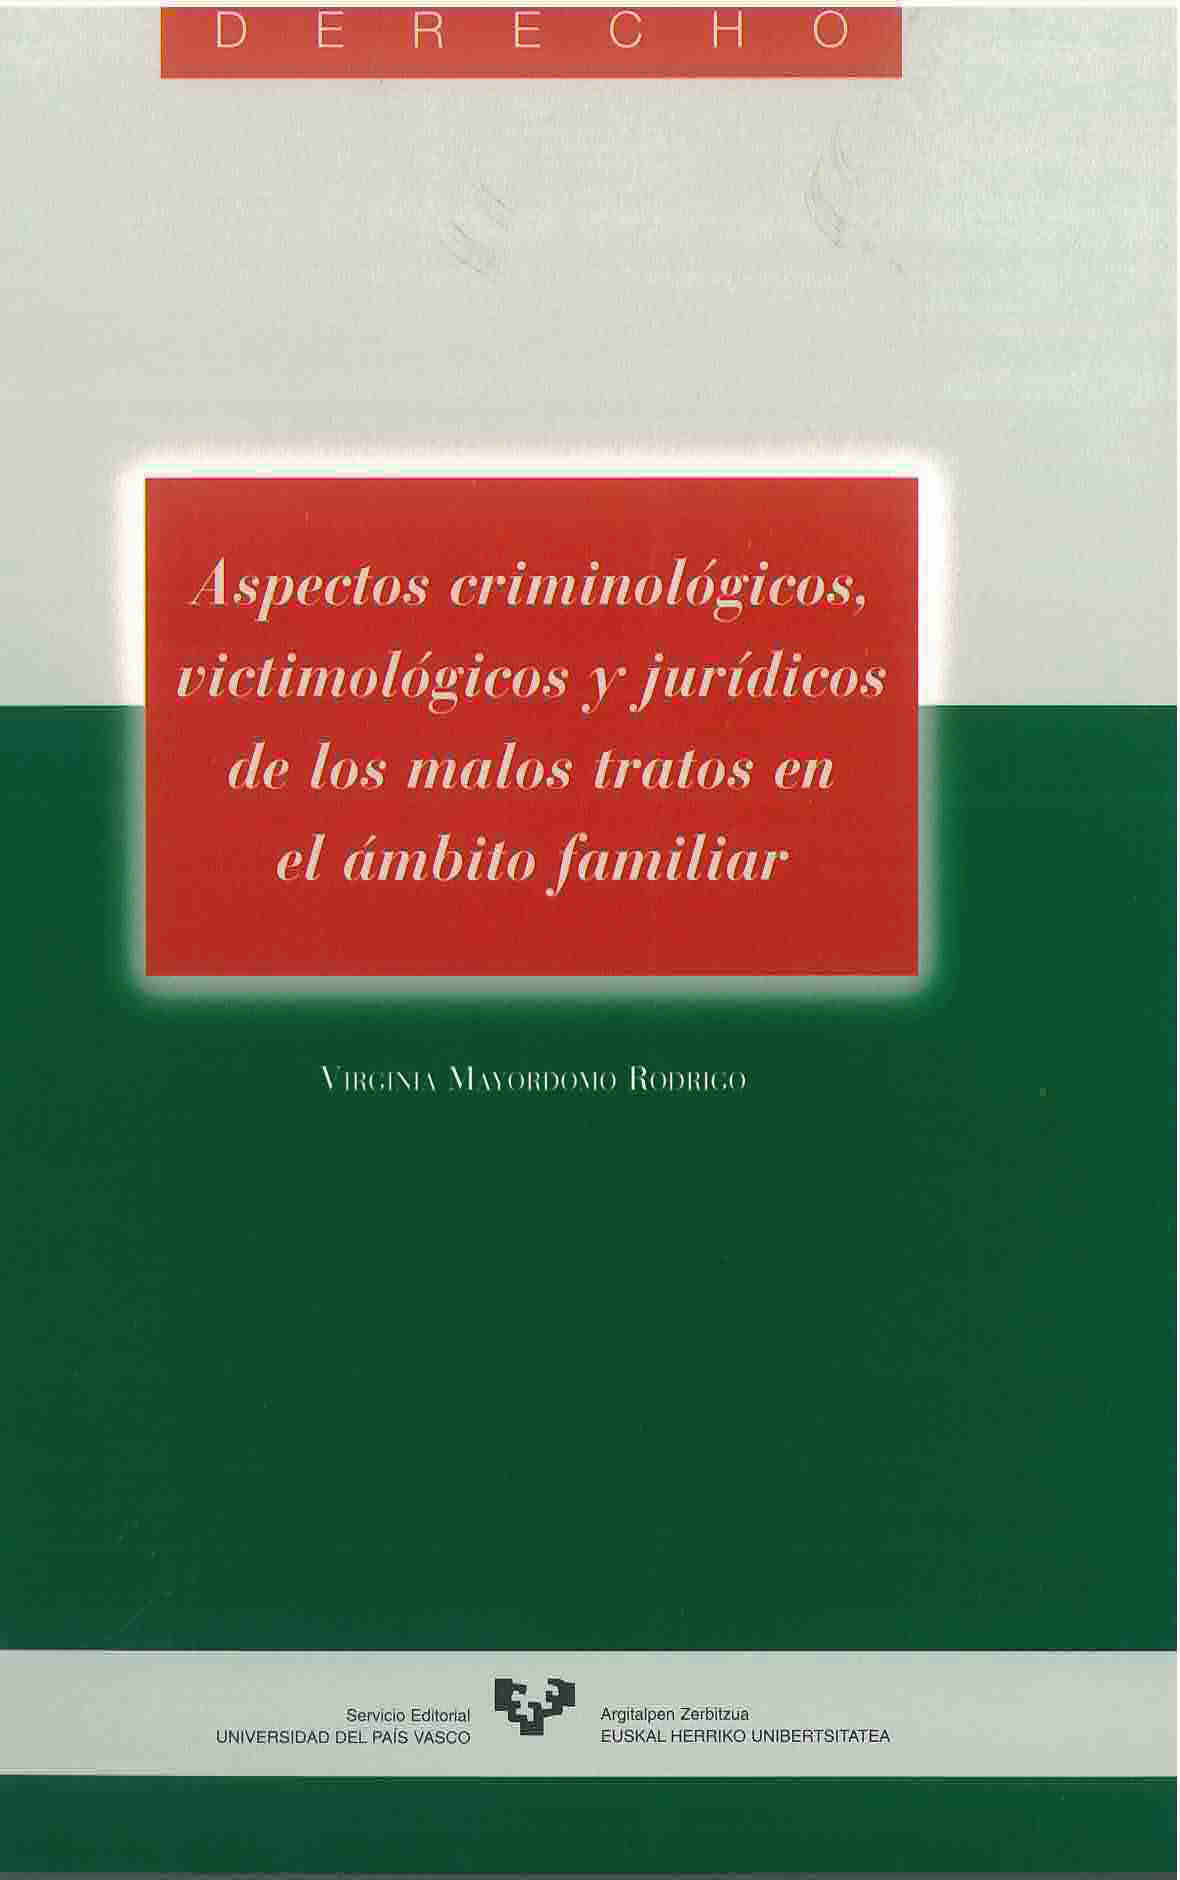 Aspectos criminológicos, victimológicos y jurídicos de los malos tratos en ámbito familiar